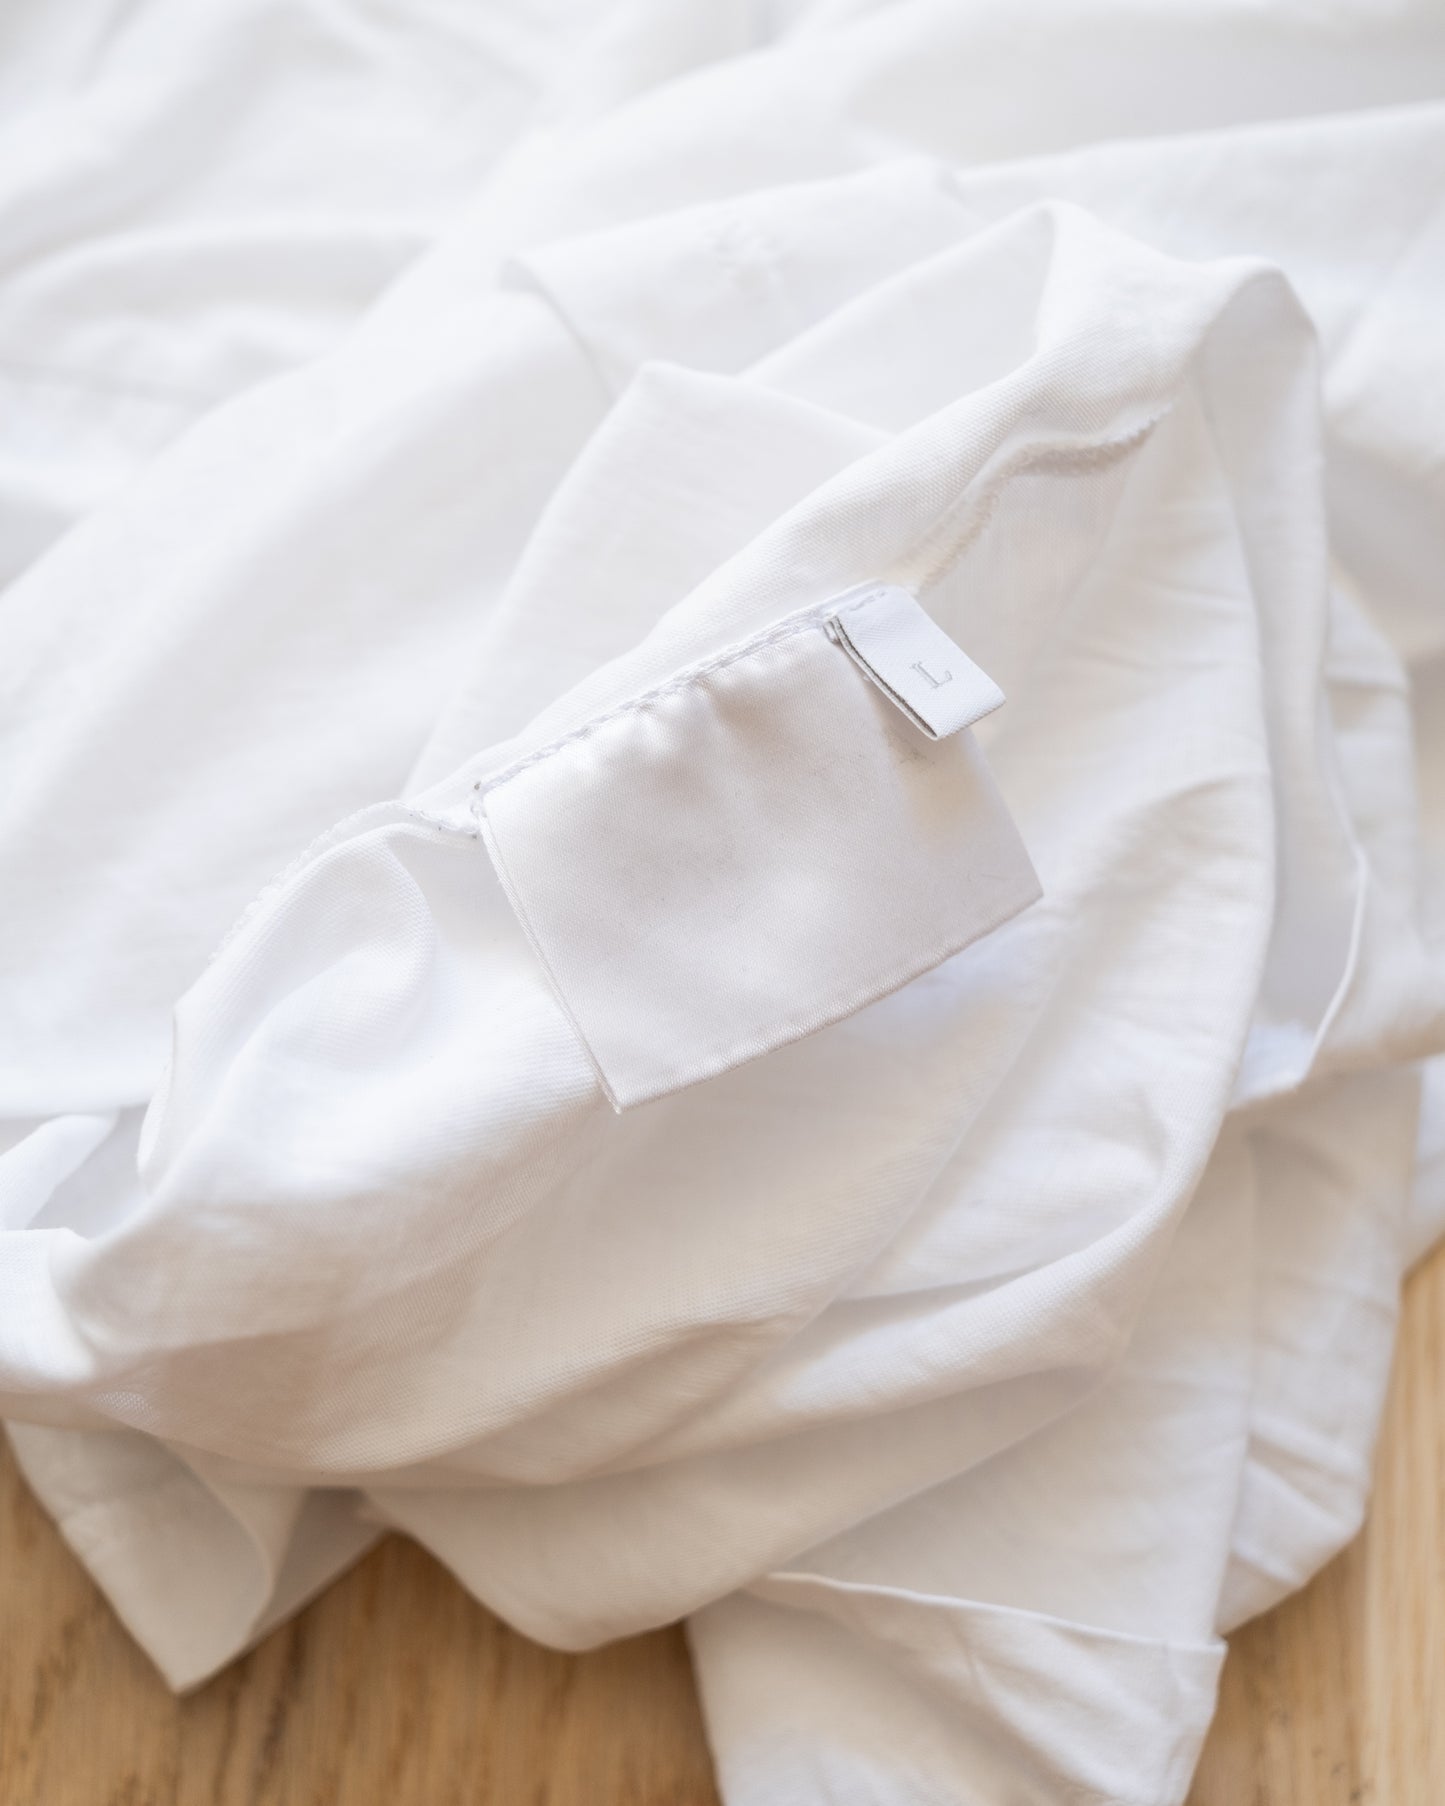 Prada Vintage Cotton Jersey T-Shirt Size L